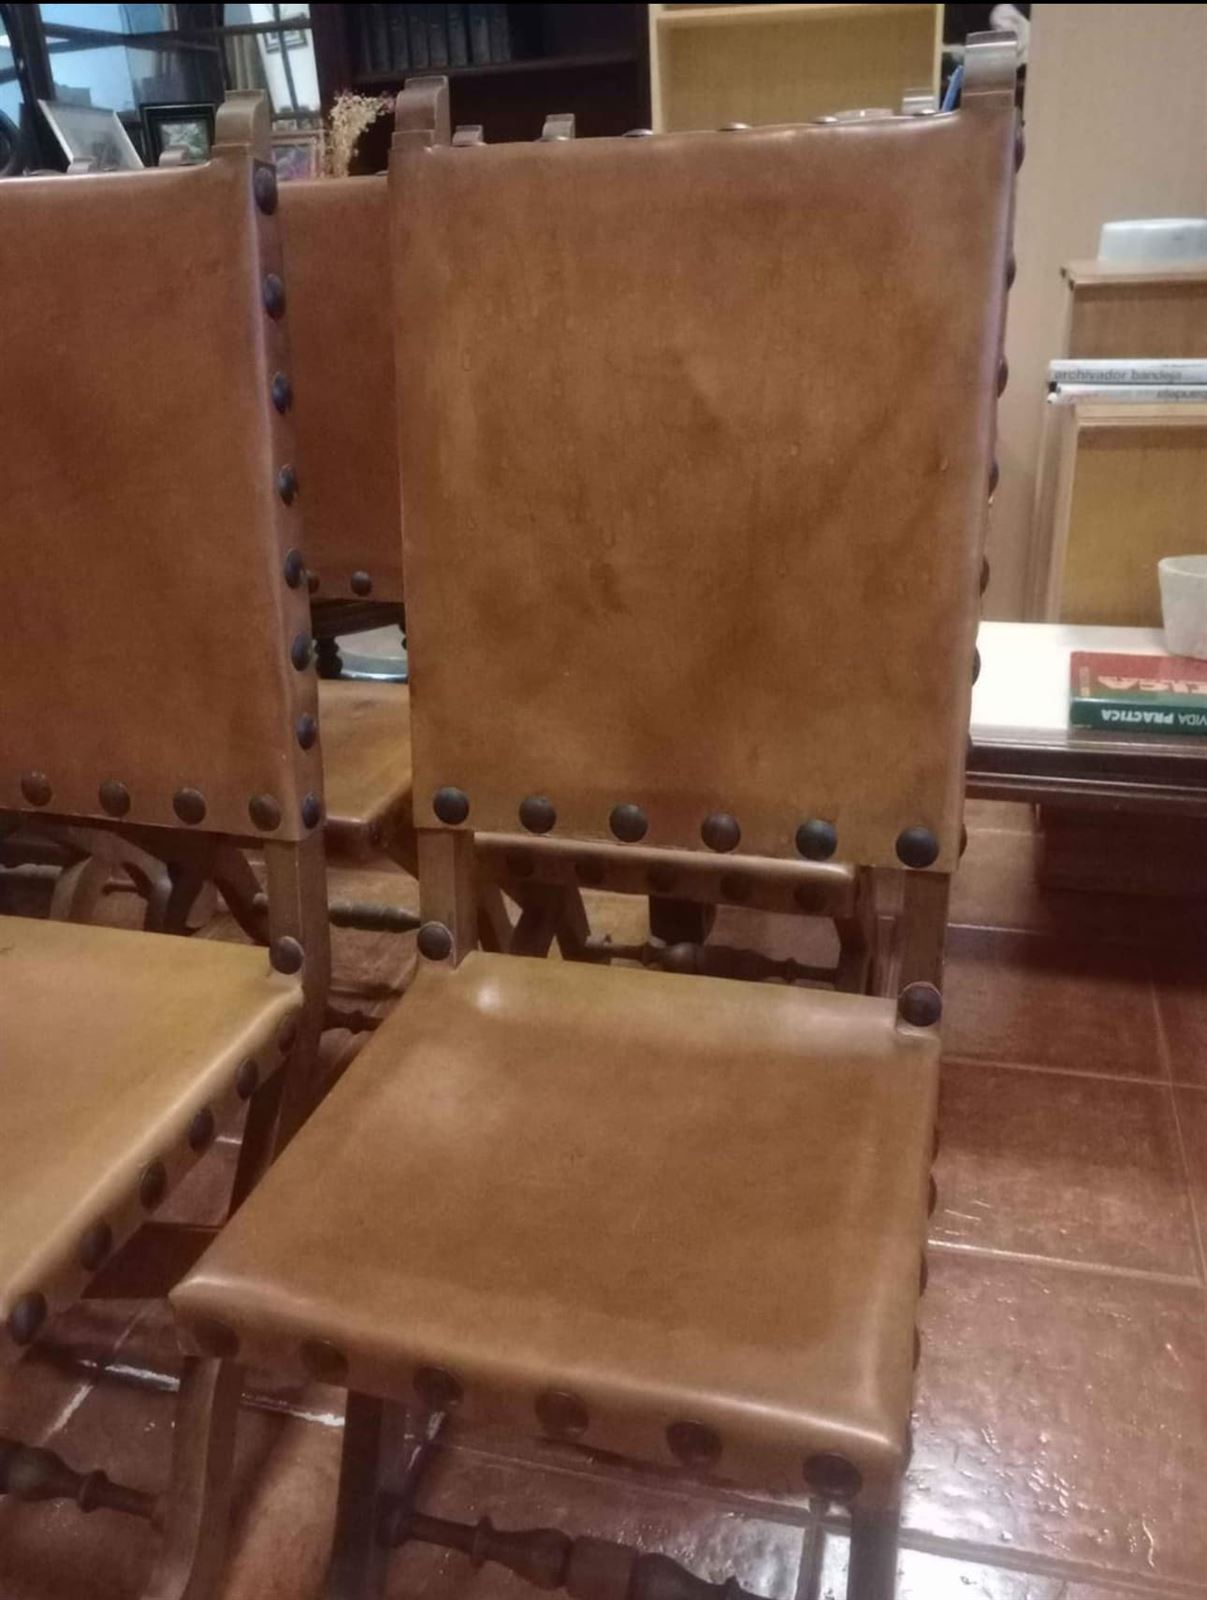 6 sillas de cuero y madera - Imagen 2